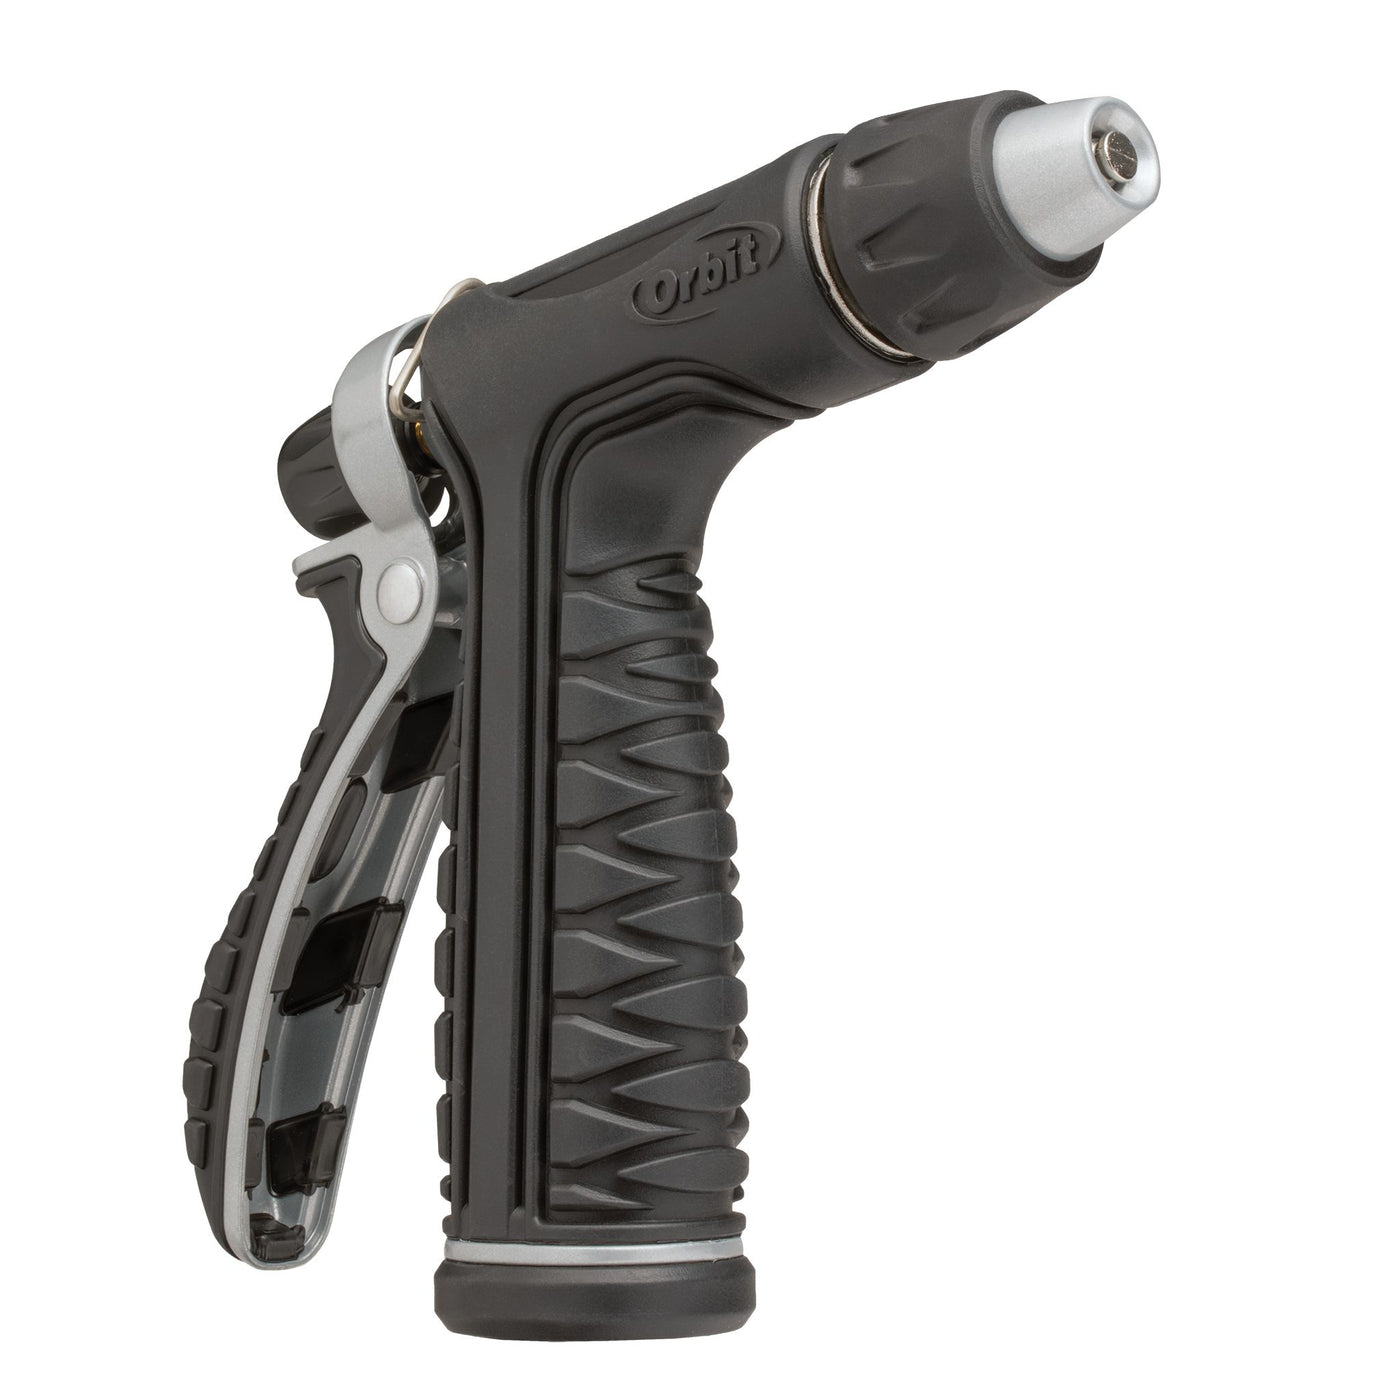 Pro Flo Metal Rear Trigger Nozzle Set